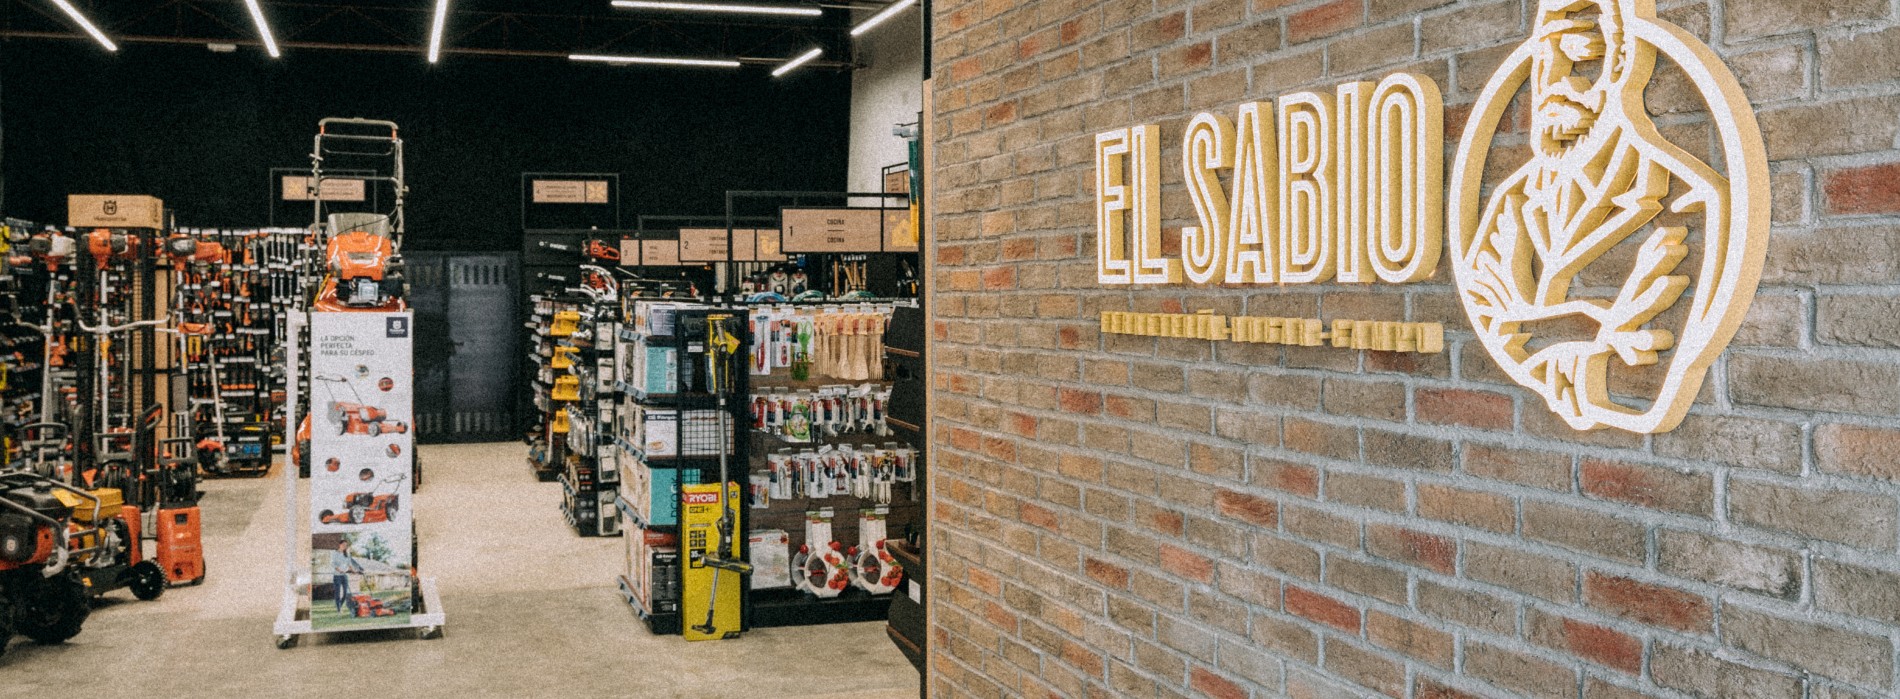 El Sabio consolide sa stratégie d’expansion avec l’ouverture d’un nouvel établissement en Galice